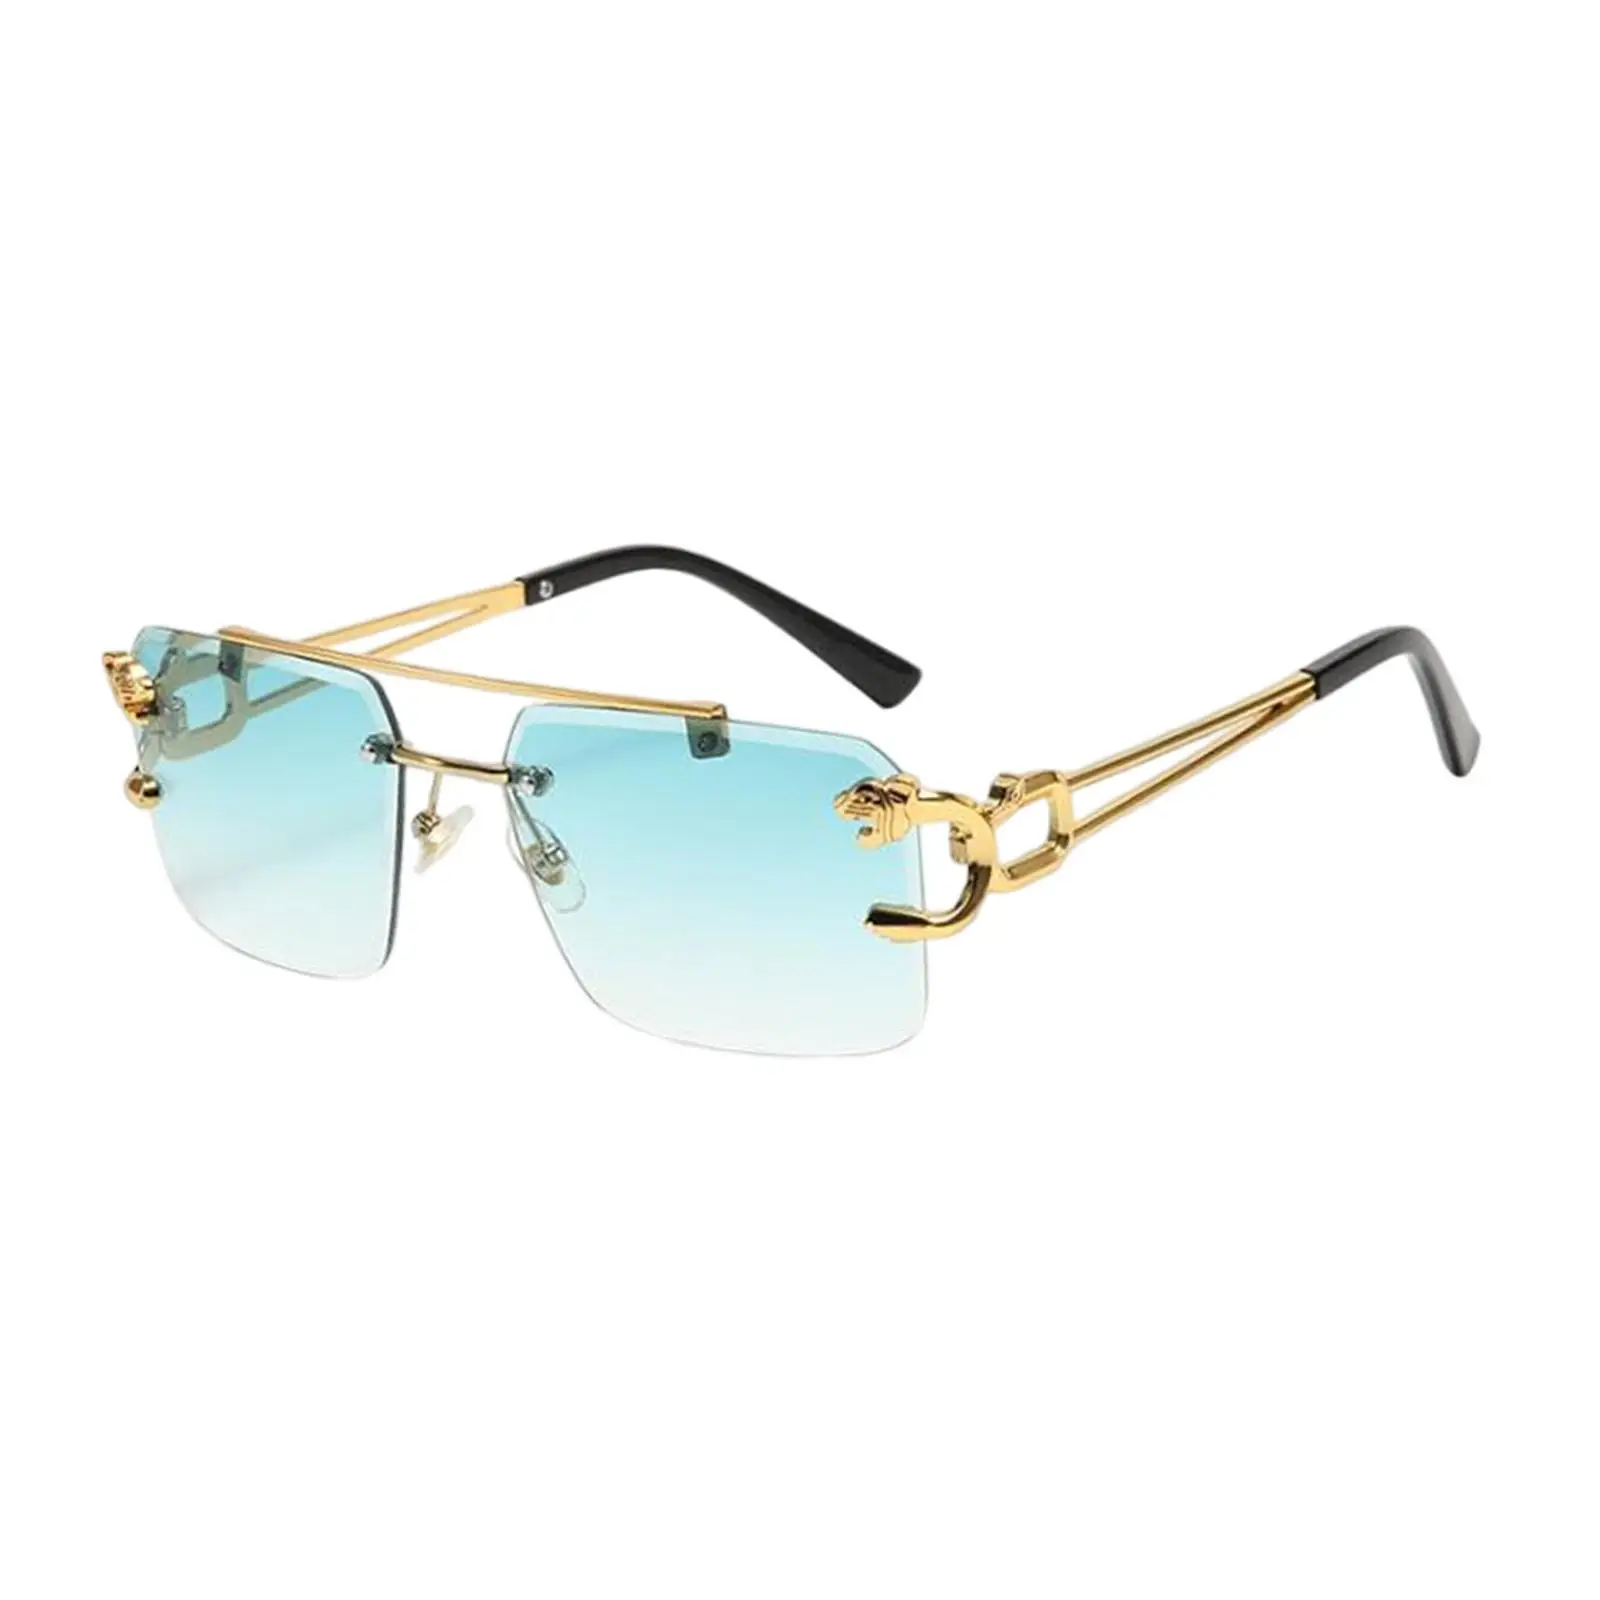 Vintage Style Rimless Rectangle Sunglasses Tinted Lens Metal Frameless Eyewear Sunglasses for Women Men